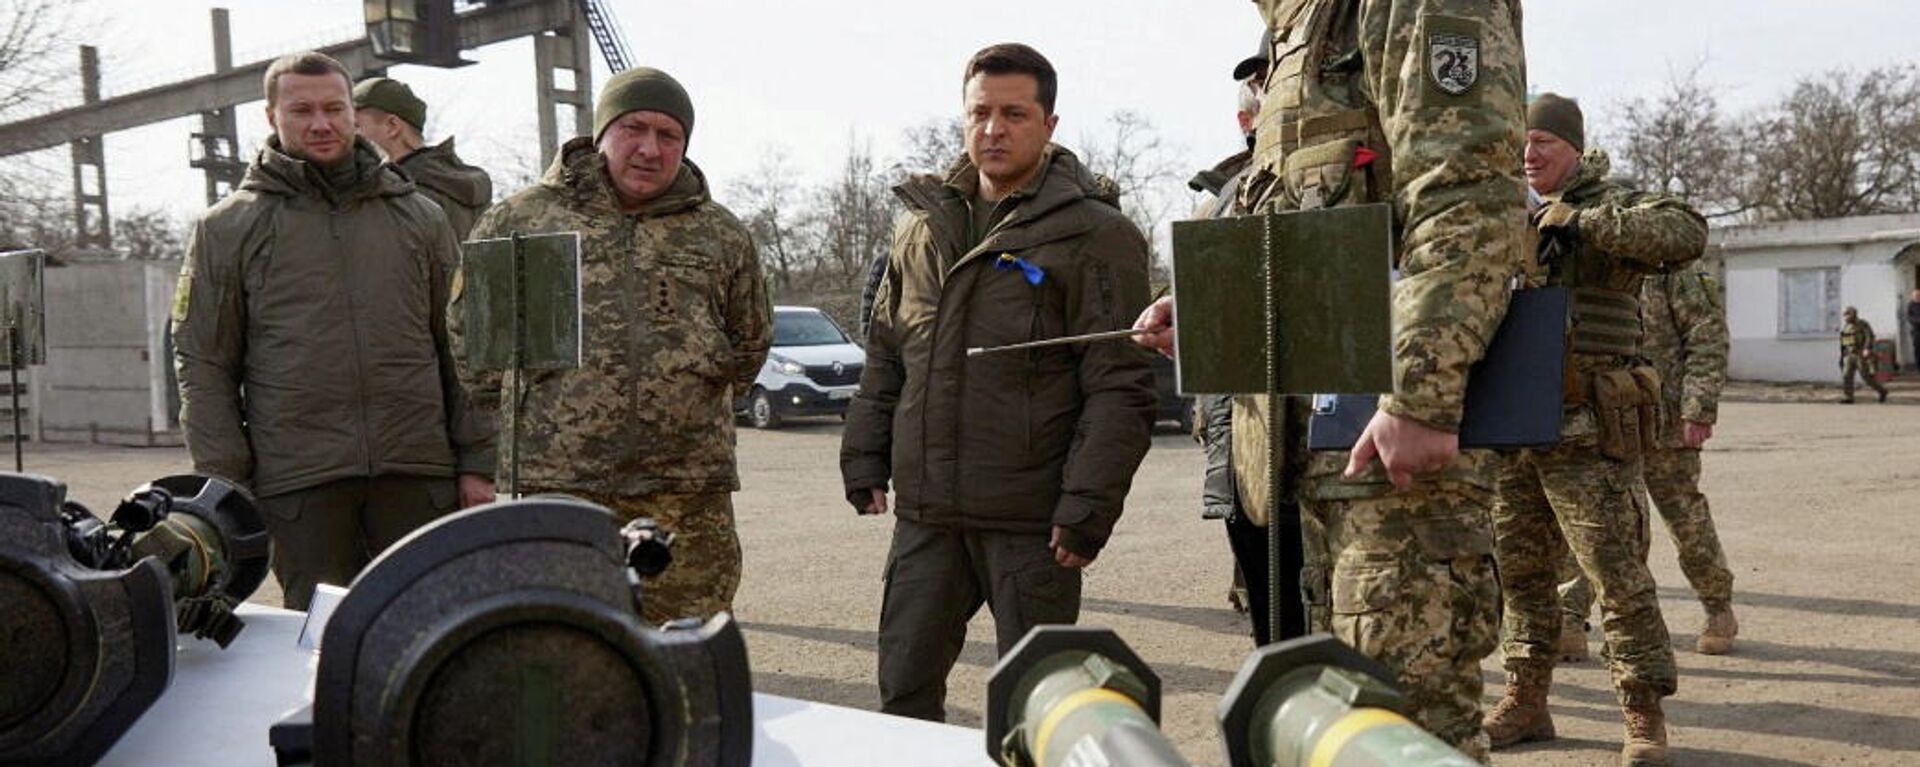 O presidente ucraniano Vladimir Zelensky inspeciona armas enquanto se reúne com membros das forças armadas do país na região de Donetsk, Ucrânia, em 17 de fevereiro de 2022 - Sputnik Brasil, 1920, 03.03.2022